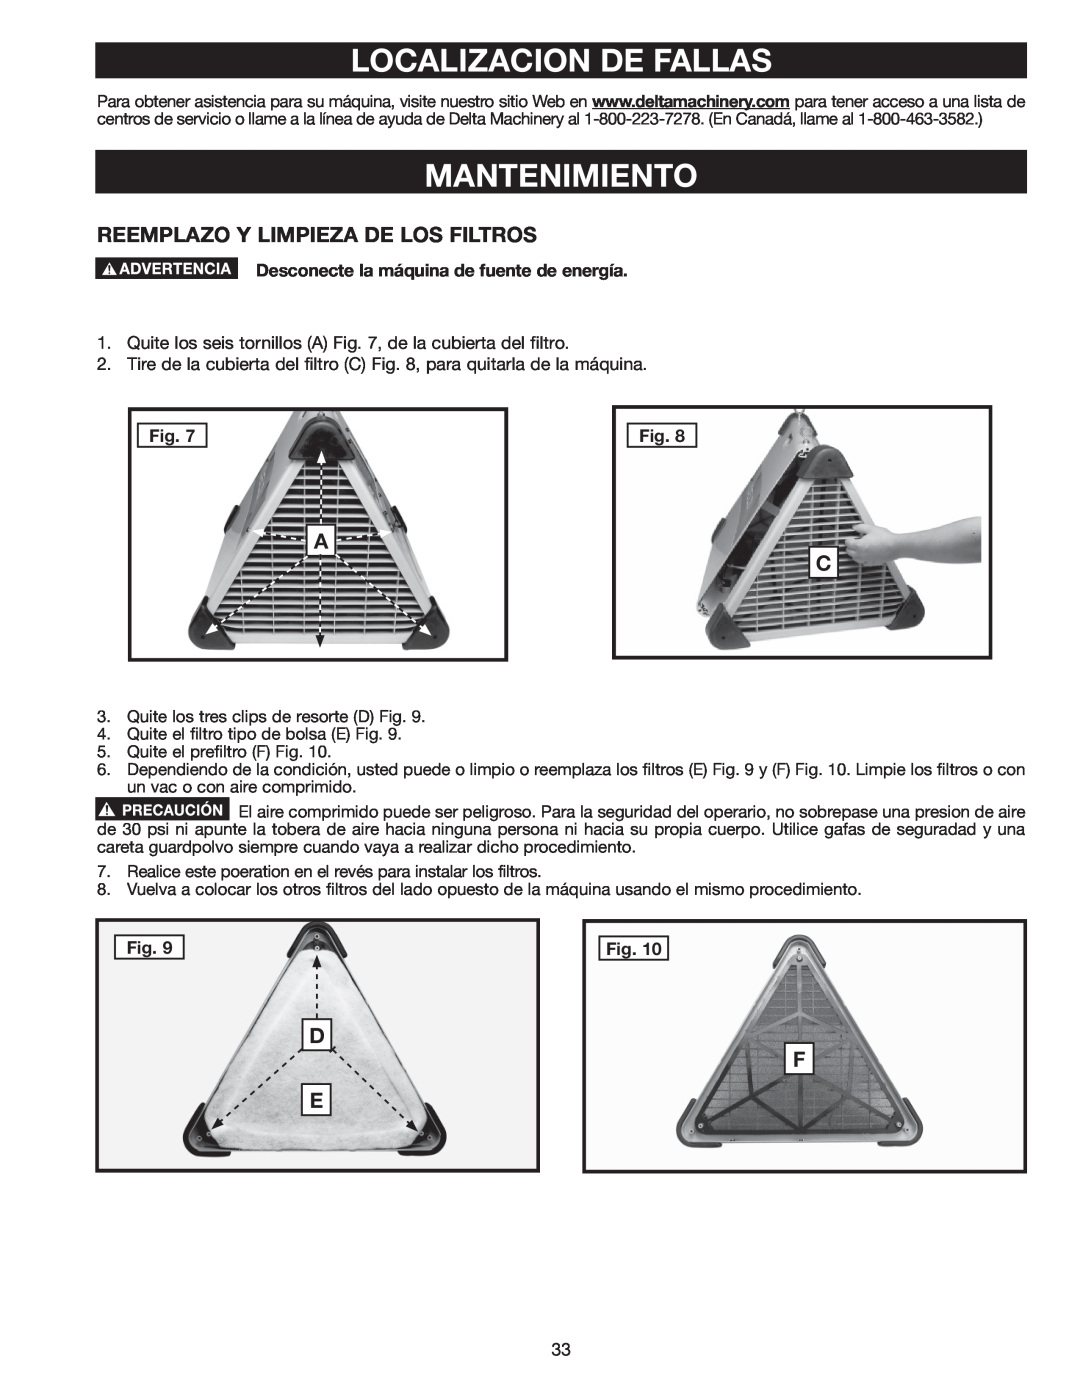 Delta AP-100 instruction manual Localizacion De Fallas, Mantenimiento, Reemplazo Y Limpieza De Los Filtros, Fig 